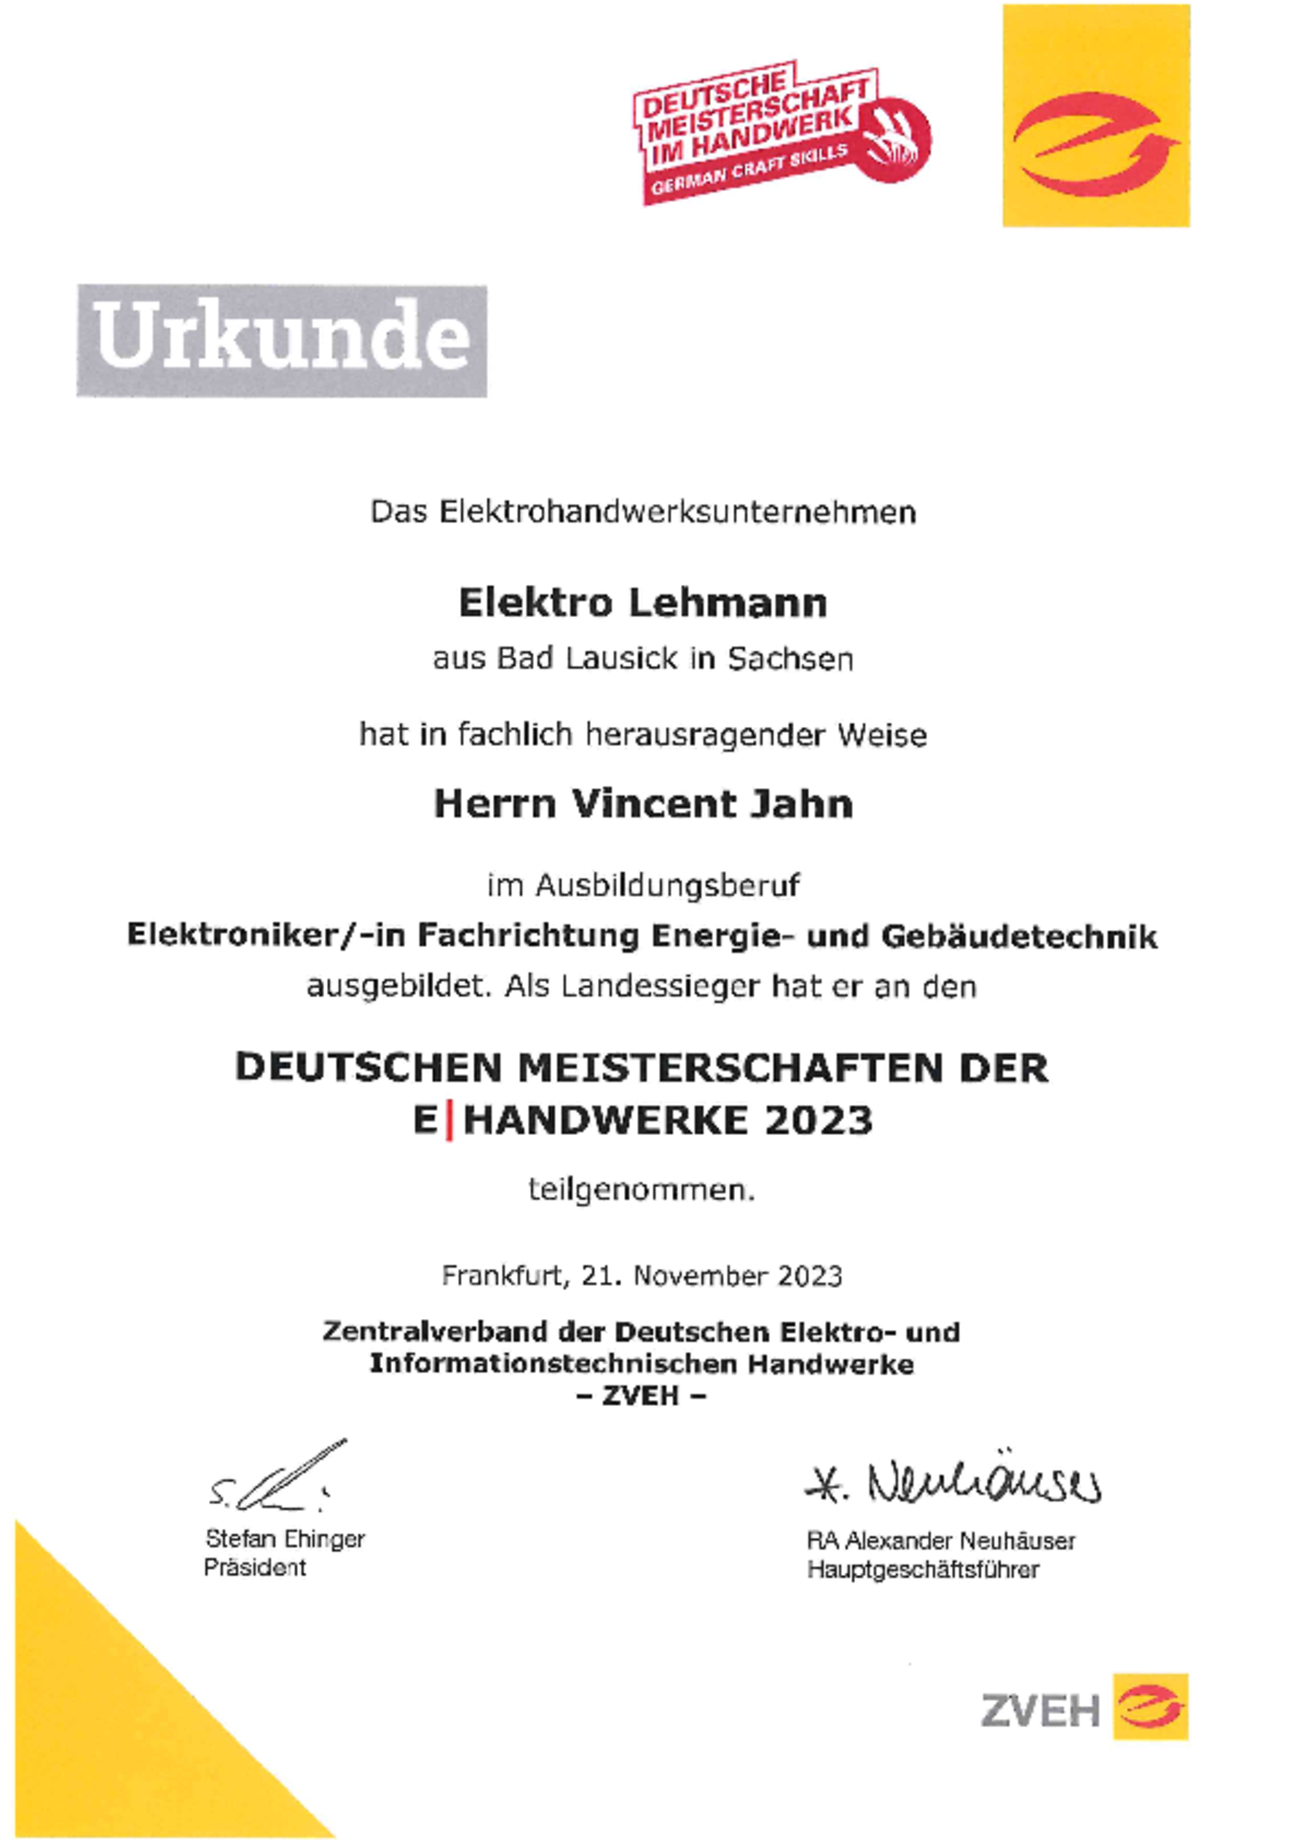 Urkunde Deutsche Meisterschaften der E|Handwerke 2023 bei Elektro Lehmann in Bad Lausick